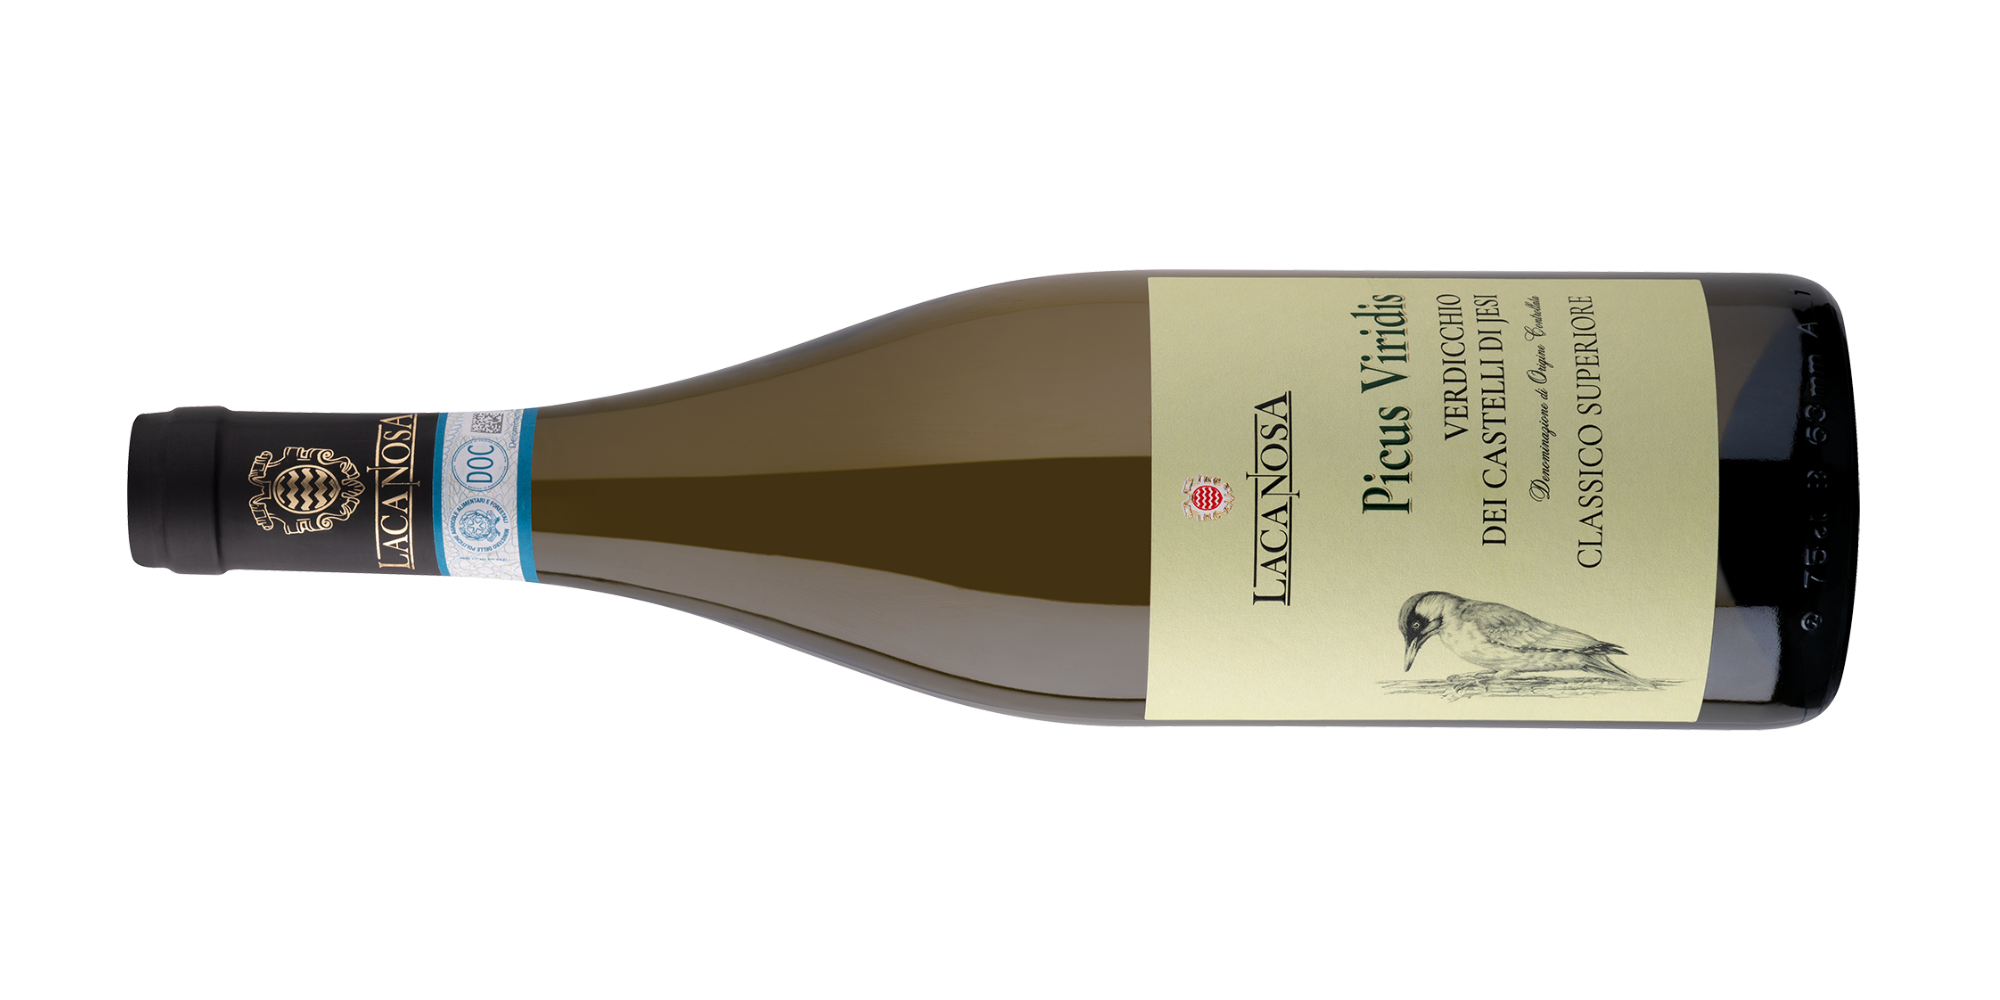 La Canosa Wines - High quality white wine - Picus Viridis - Verdicchio dei castelli di Jesi Classico Superiore DOC